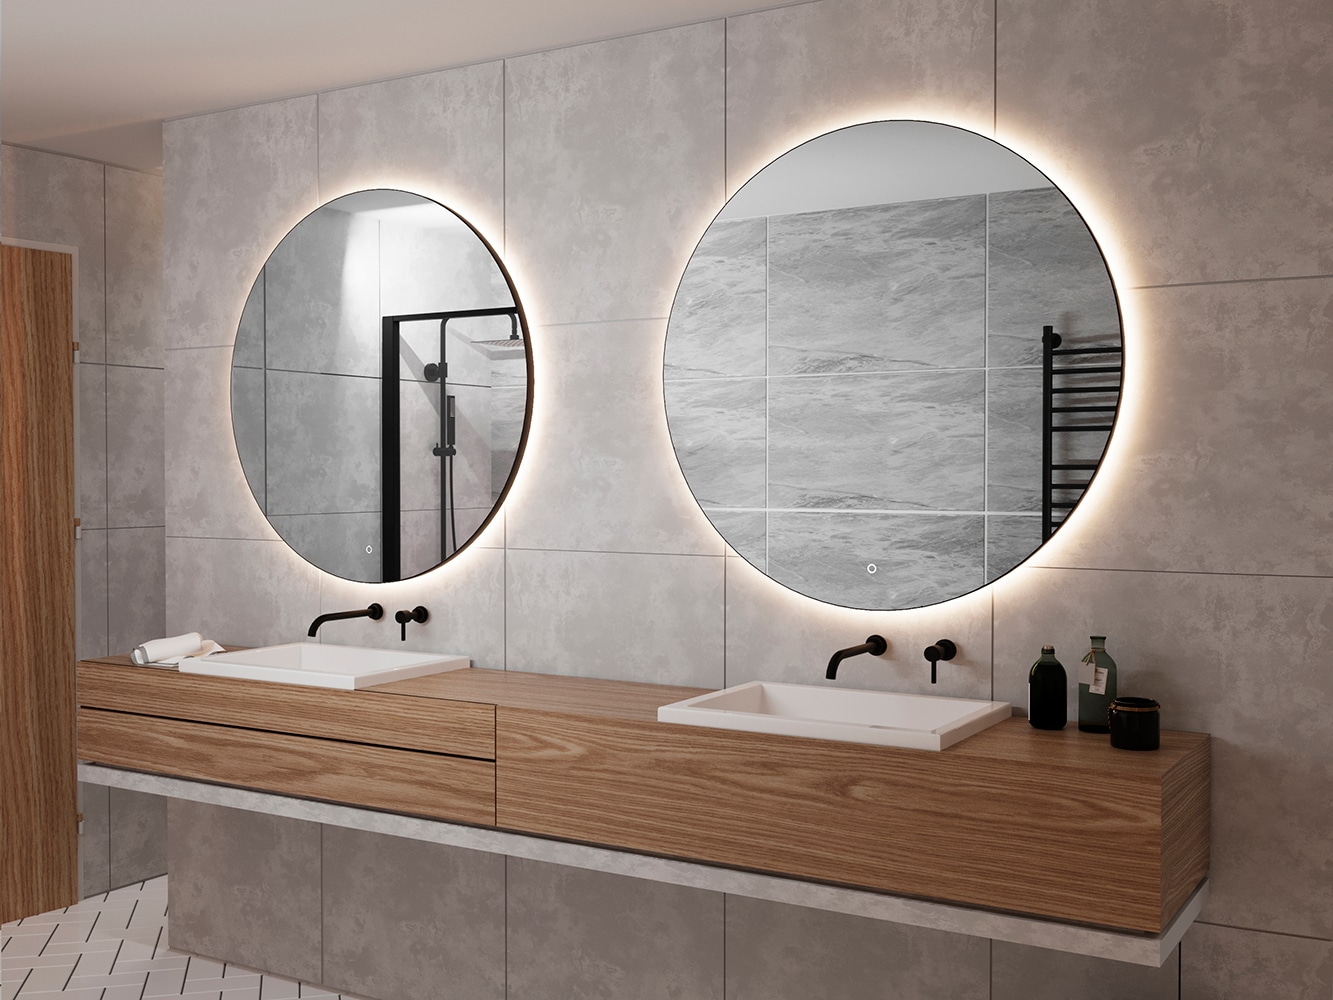 Bij een breed badmeubel is het stijlvol om 2 ronde spiegels naast elkaar te plaatsen!